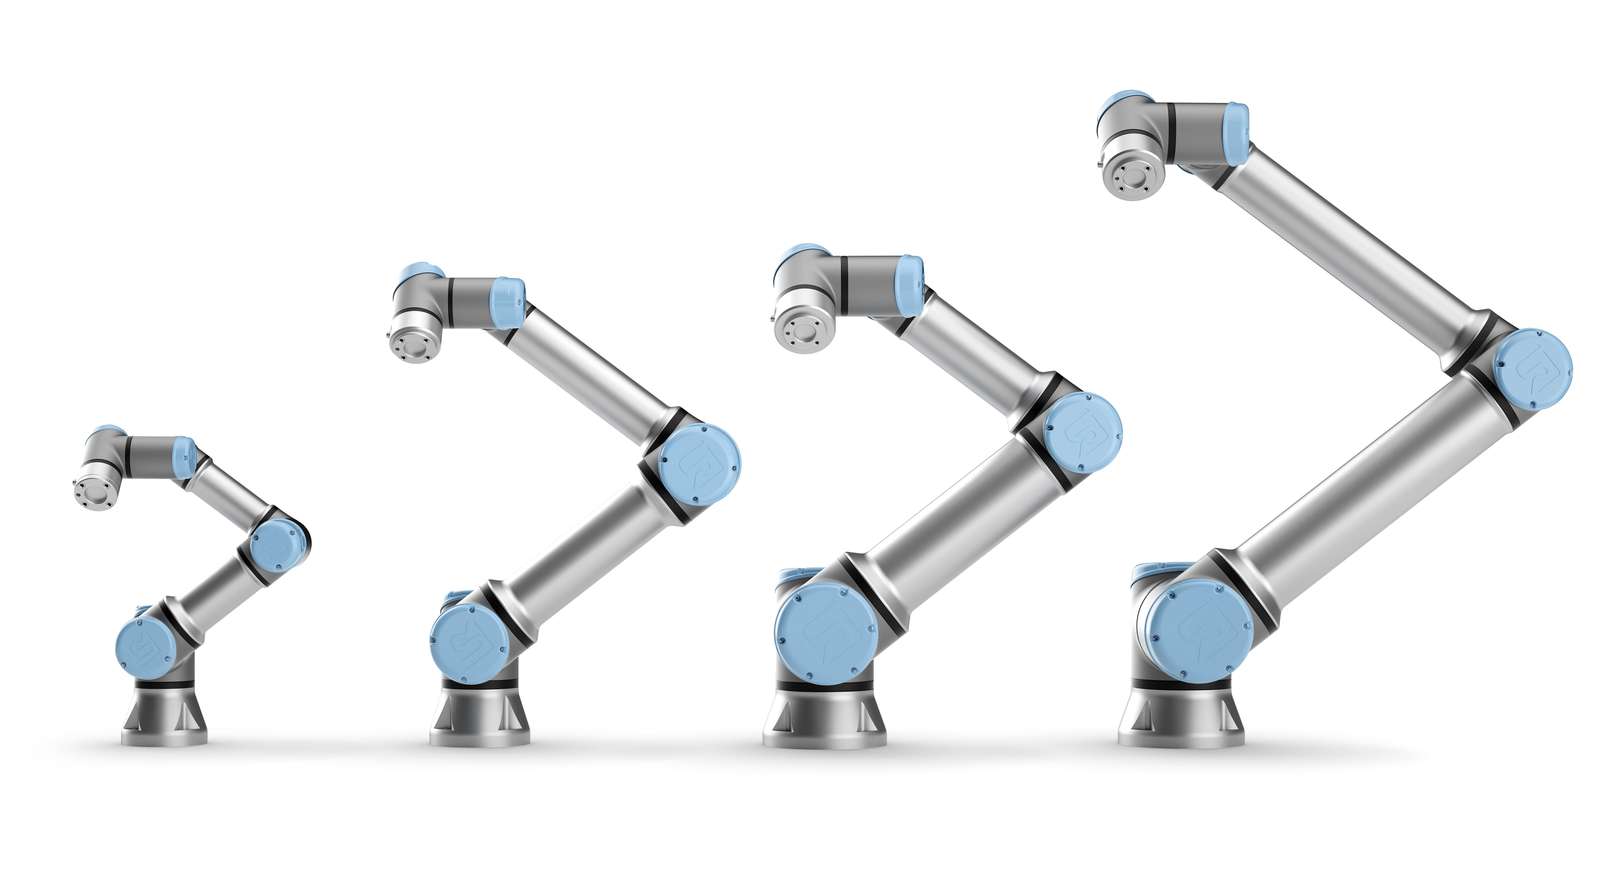 Universal Robots משיקה קובוט למשימות העמסה ״כבדות״ המיועד ליצרנים ומפעלים שמעוניינים בתגבור האוטומציה השיתופית